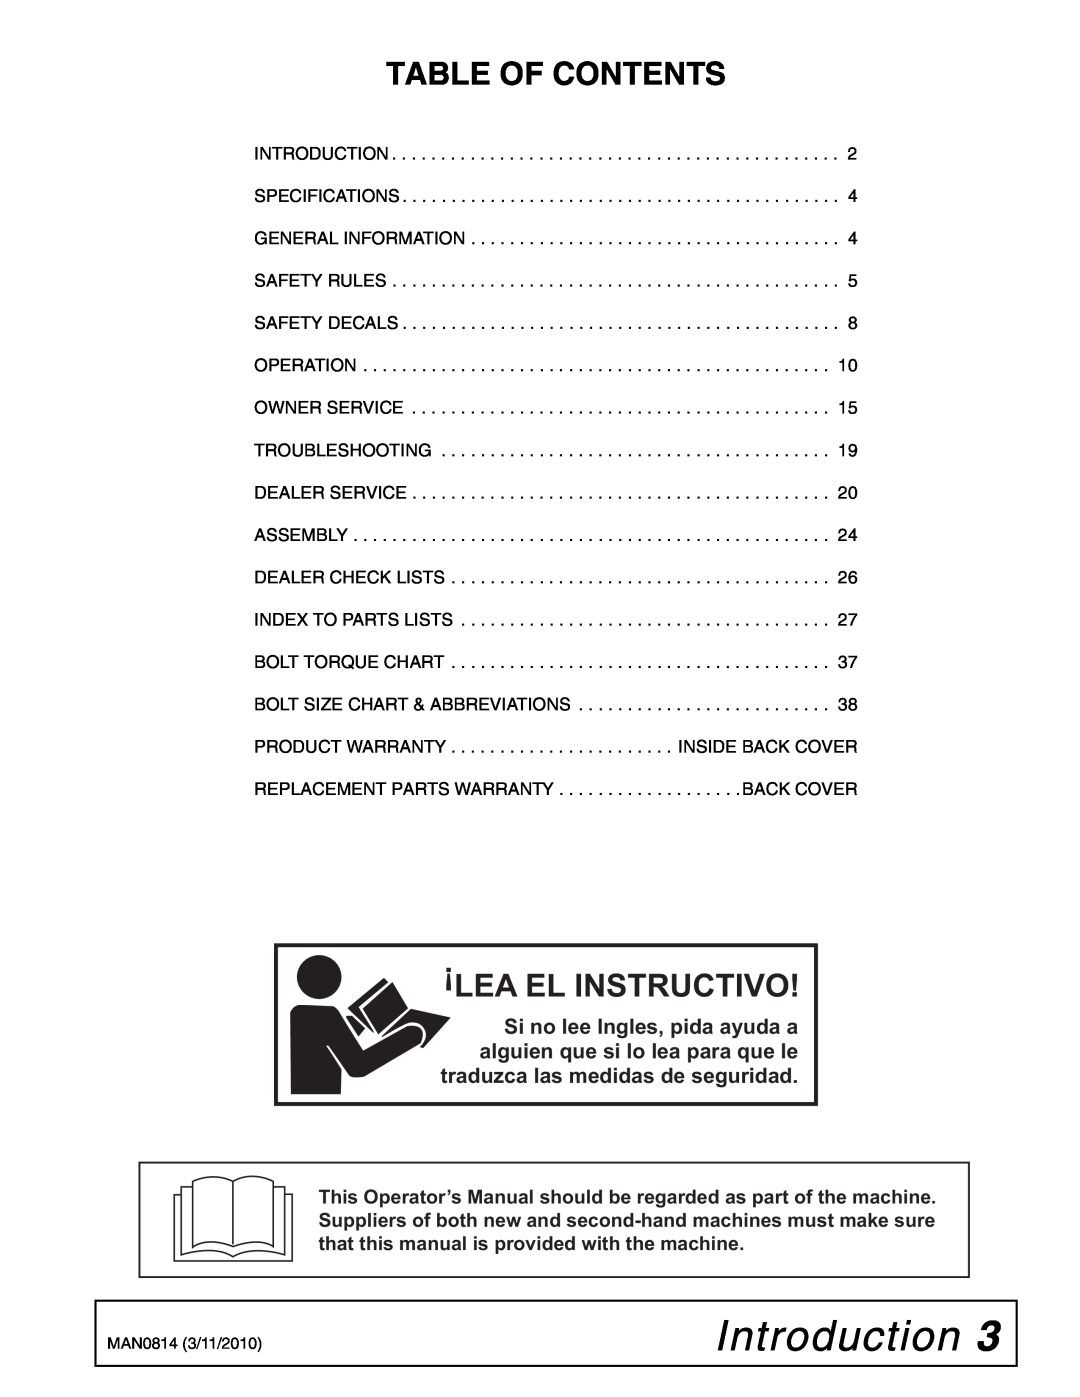 Woods Equipment TS44, TS52 manual Introduction, Table Of Contents, Lea El Instructivo 